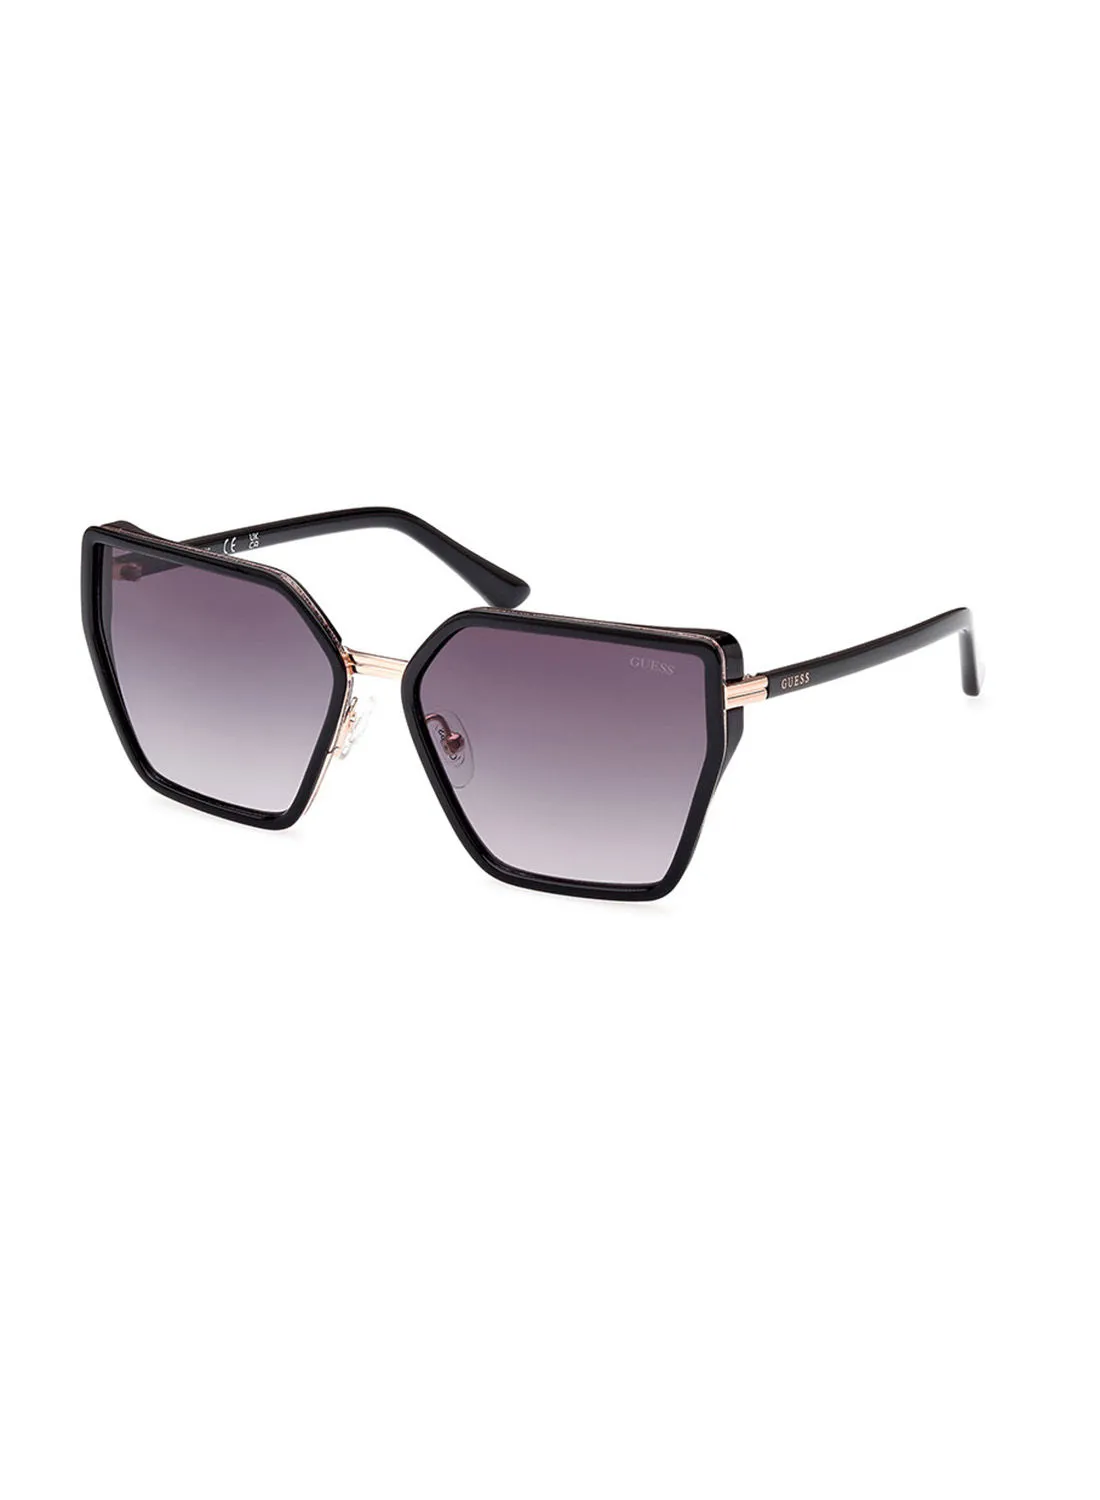 GUESS Sunglasses For Women GU787101B59